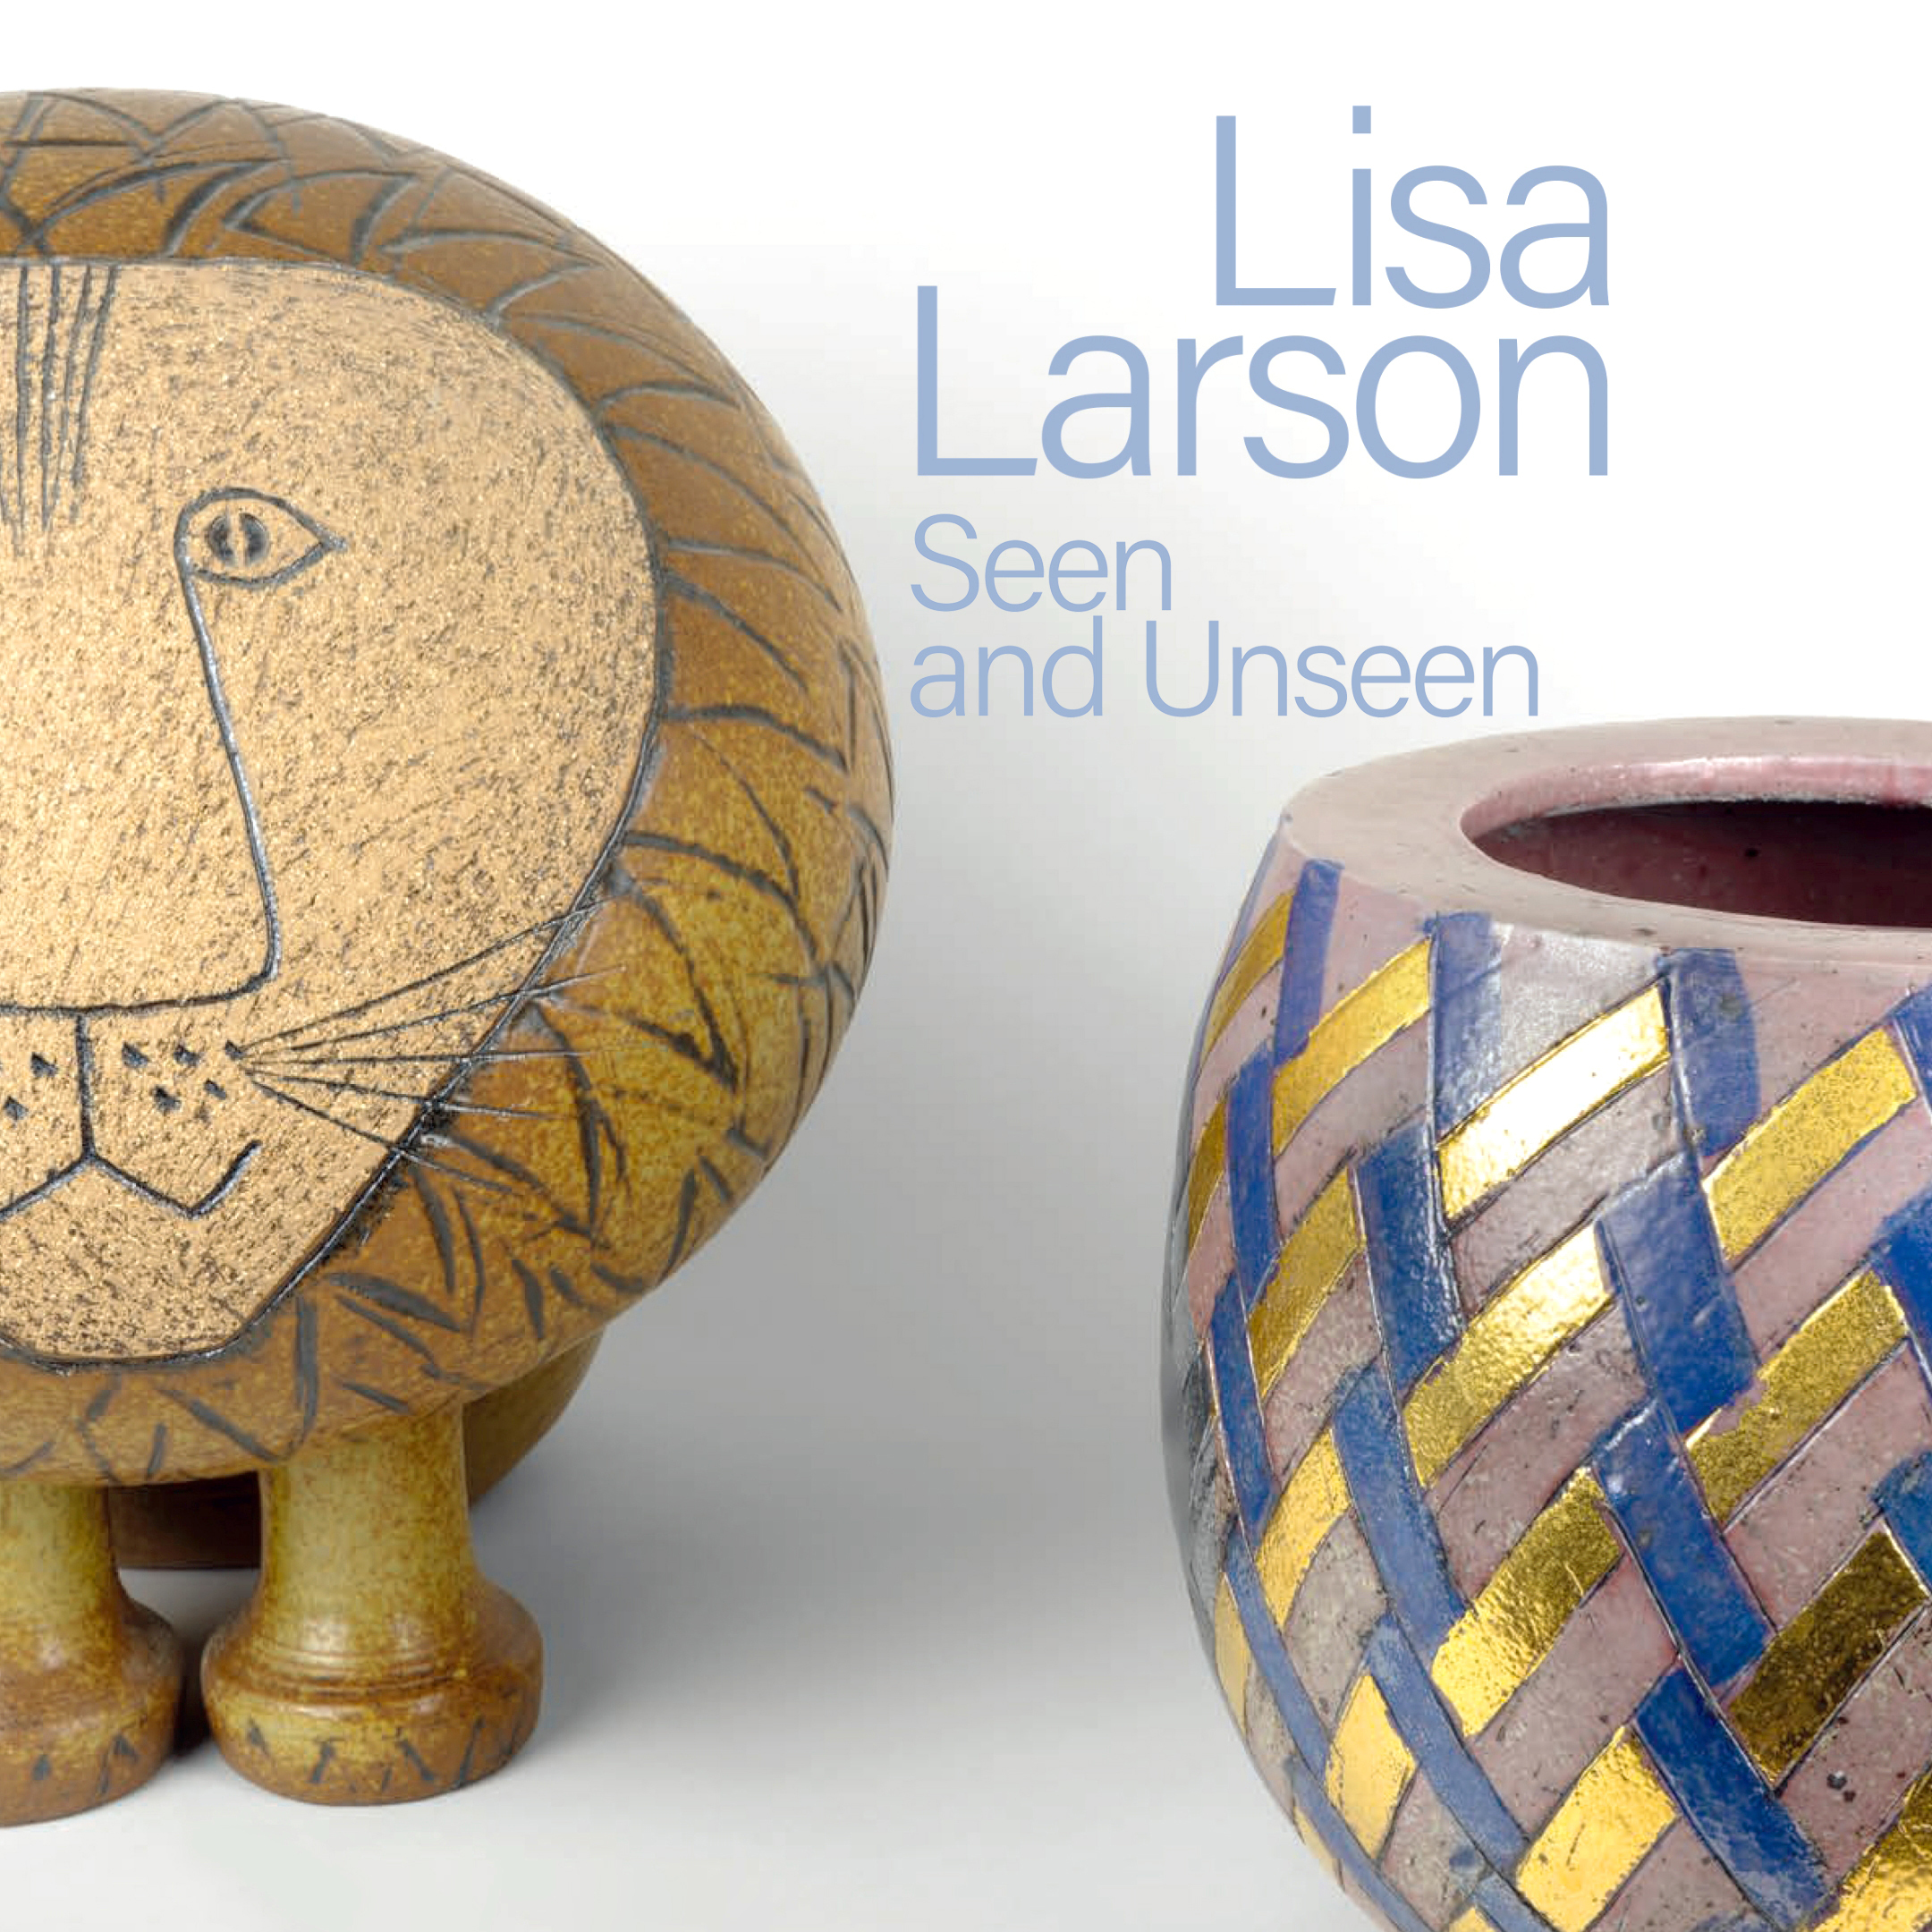 2023年リサ・ラーソン展、特集ページオープン！ – LISA LARSON